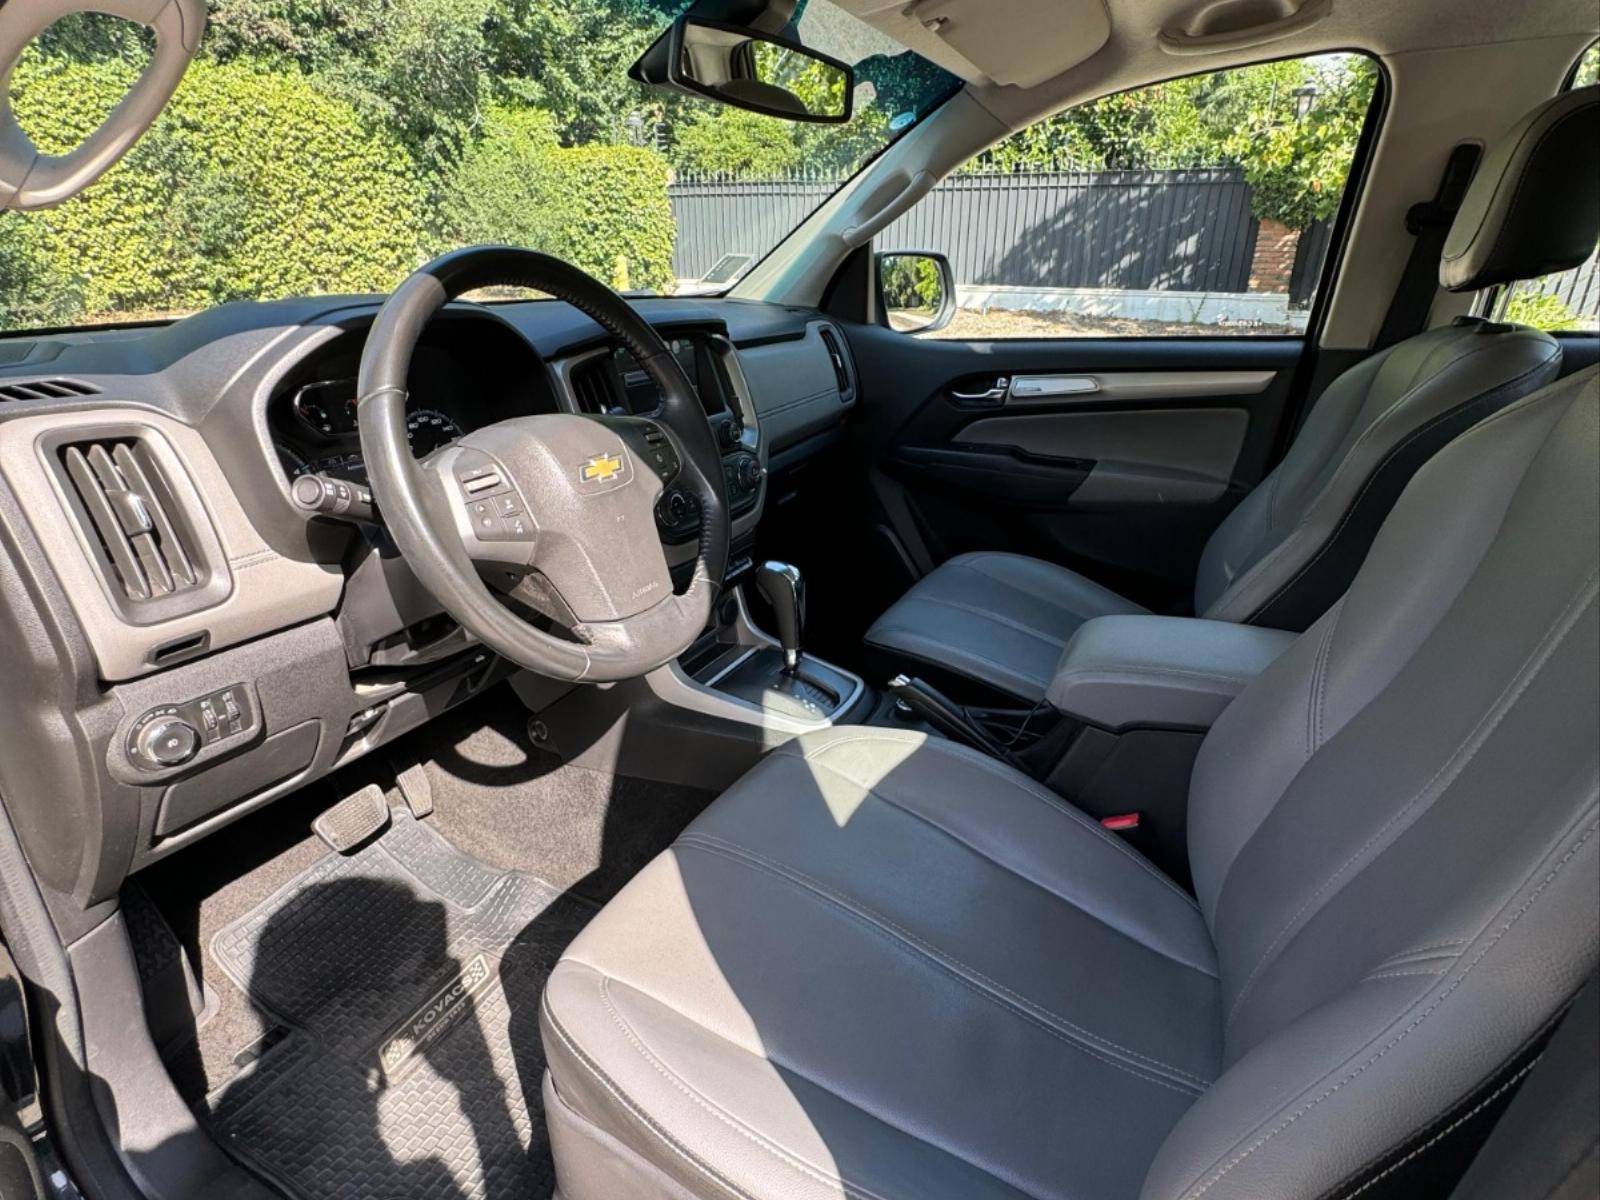 CHEVROLET COLORADO LTZ 2.8 TD 4WD AT 2019  - FULL MOTOR